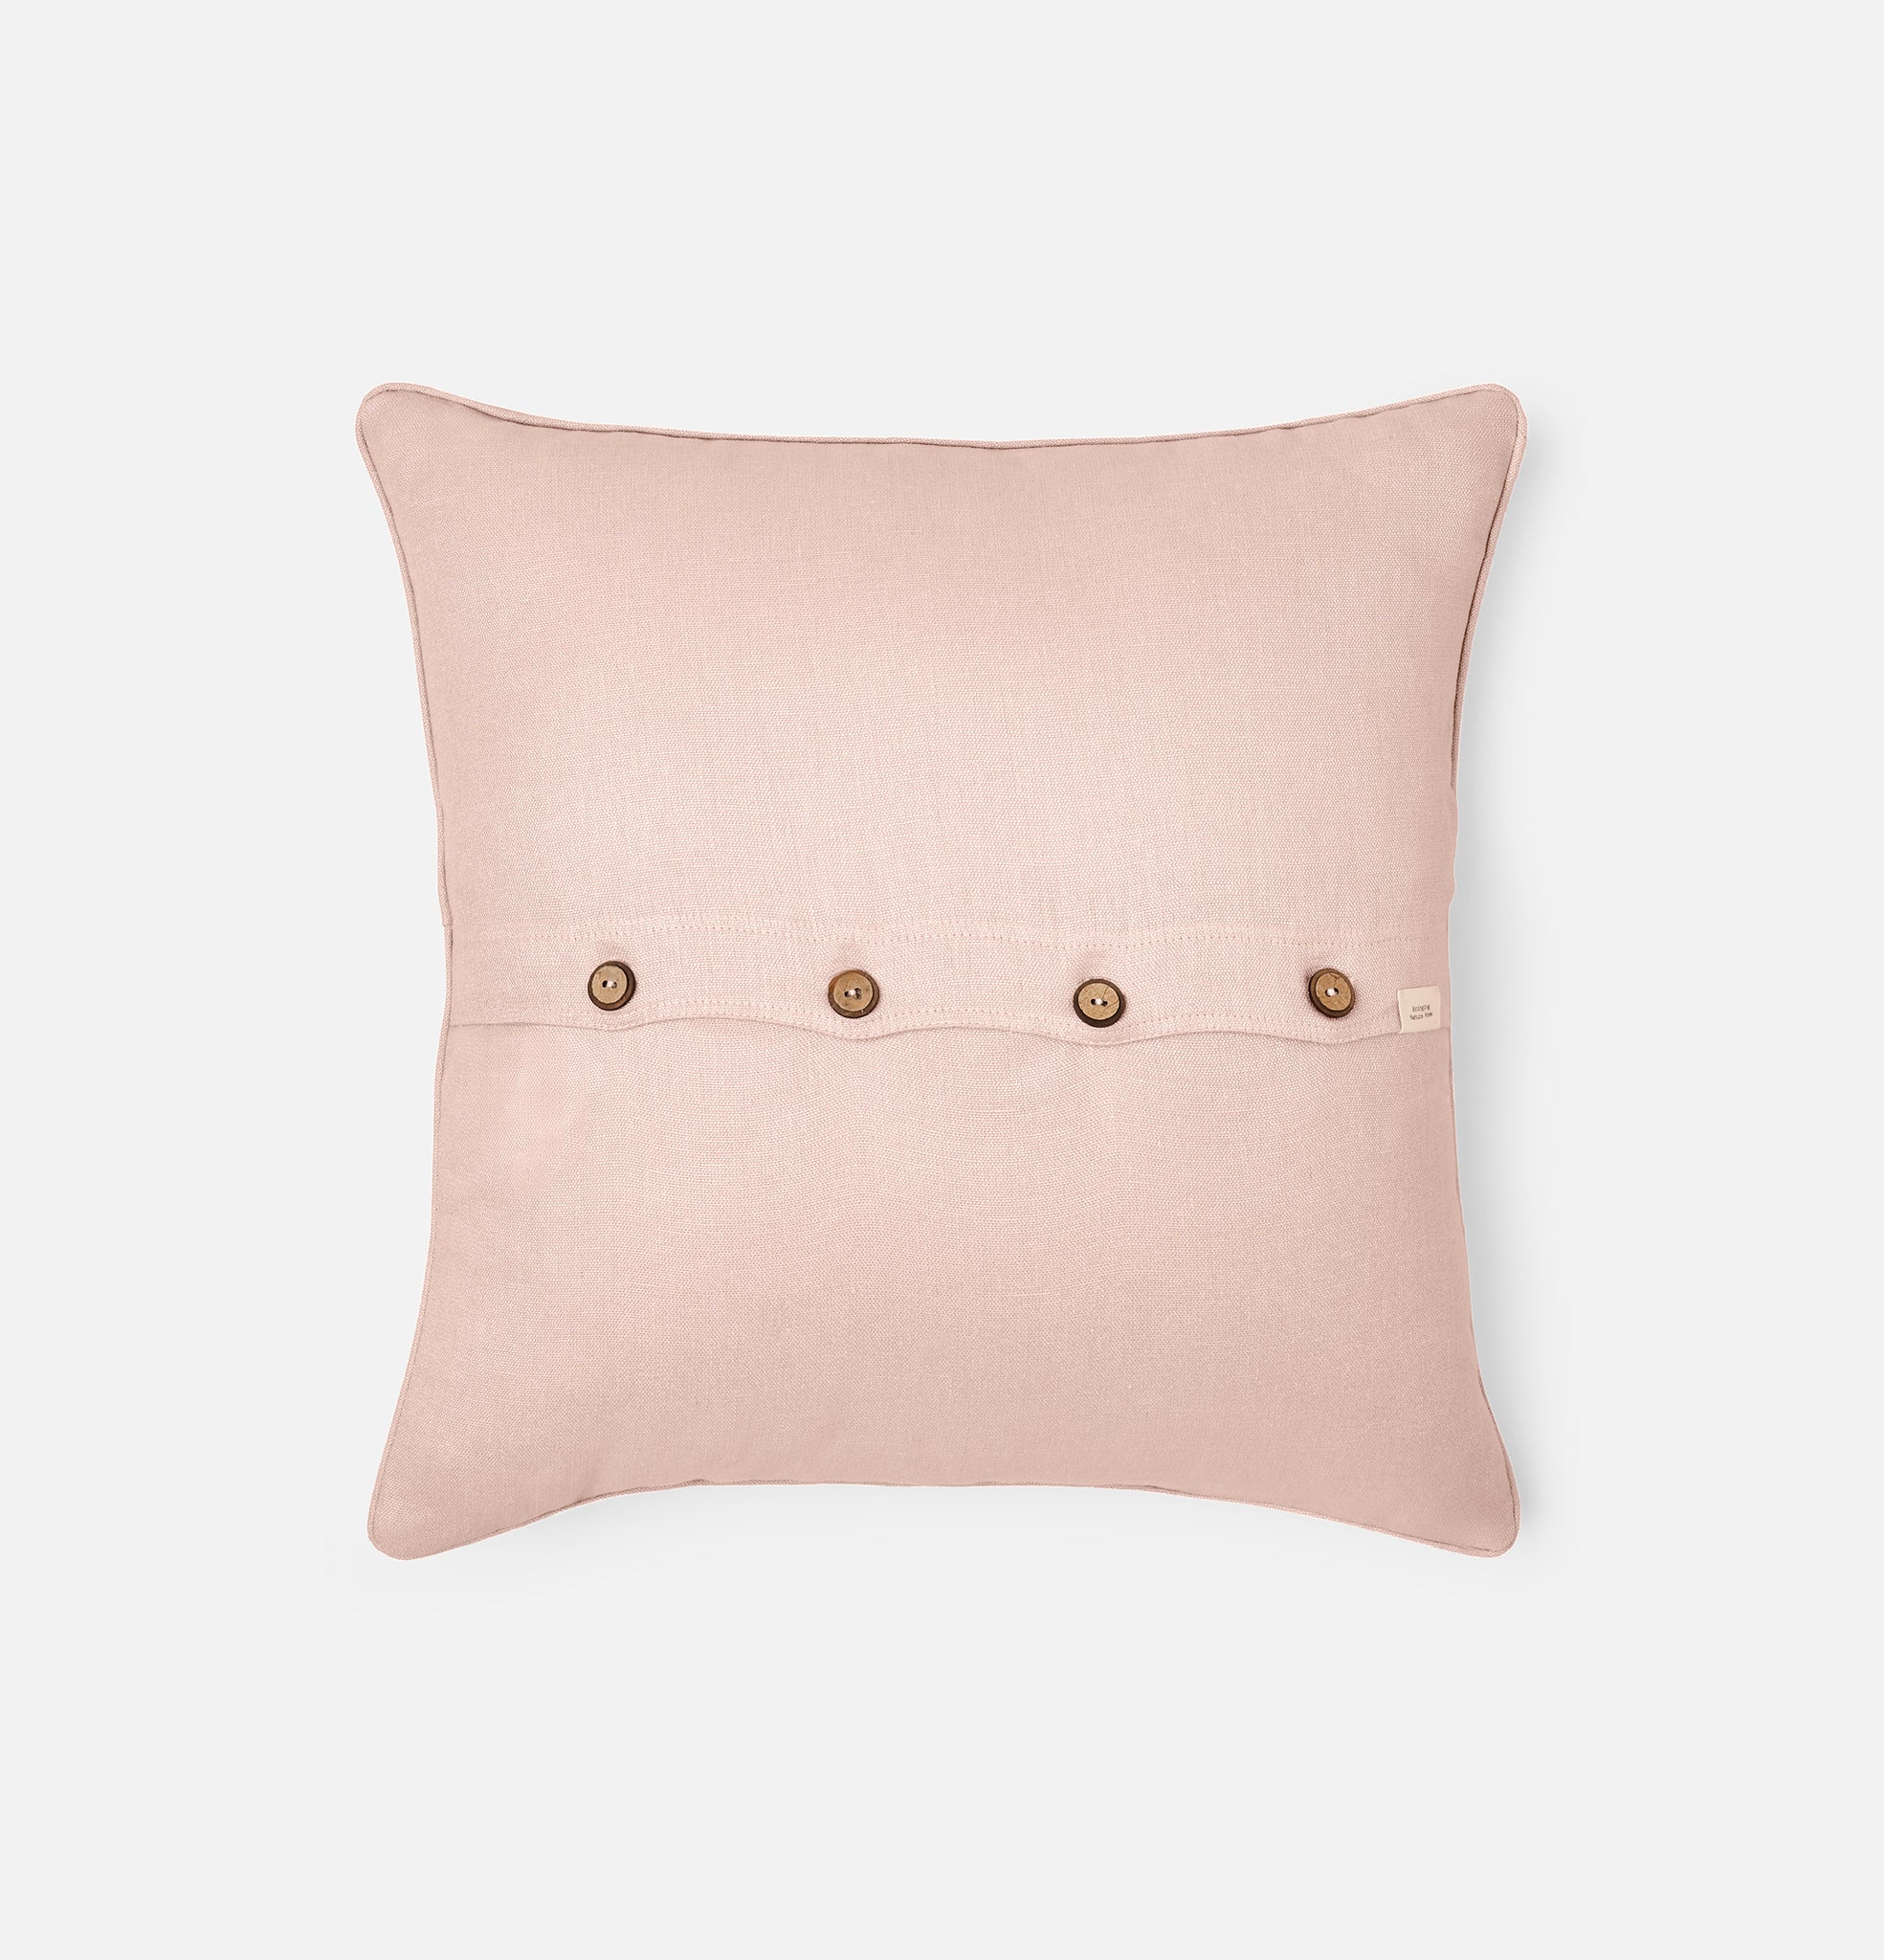 Back button detail of Midsummer pink linen cushion